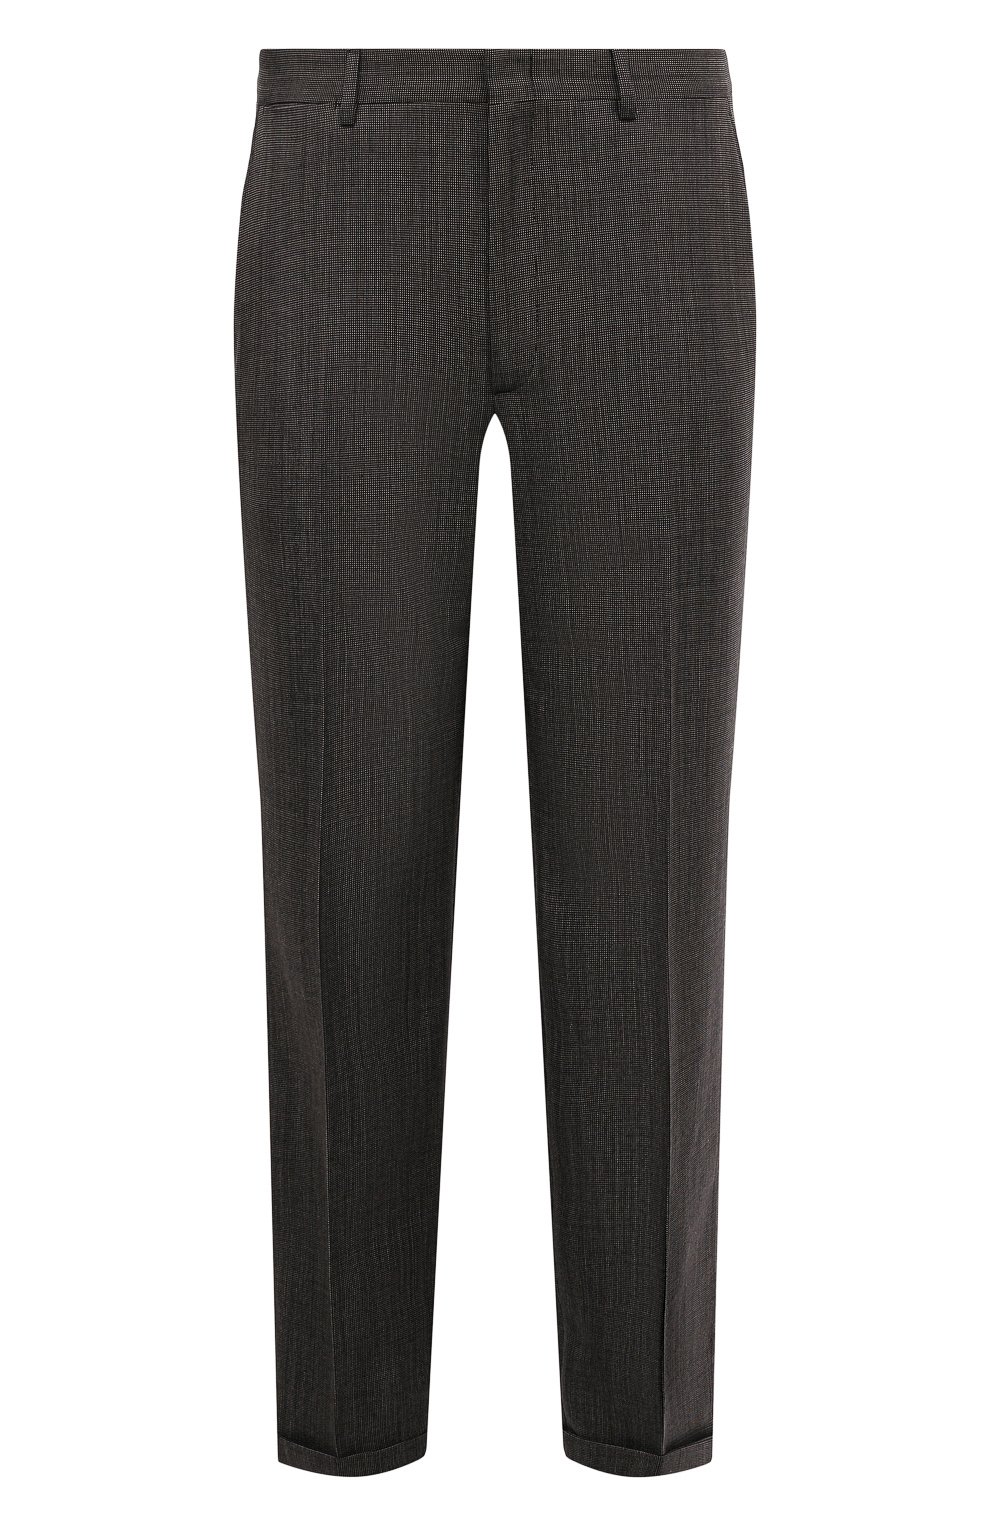 Мужские черно-белые шерстяные брюки GUCCI купить в интернет-магазине ЦУМ,арт. 568769 ZABKN